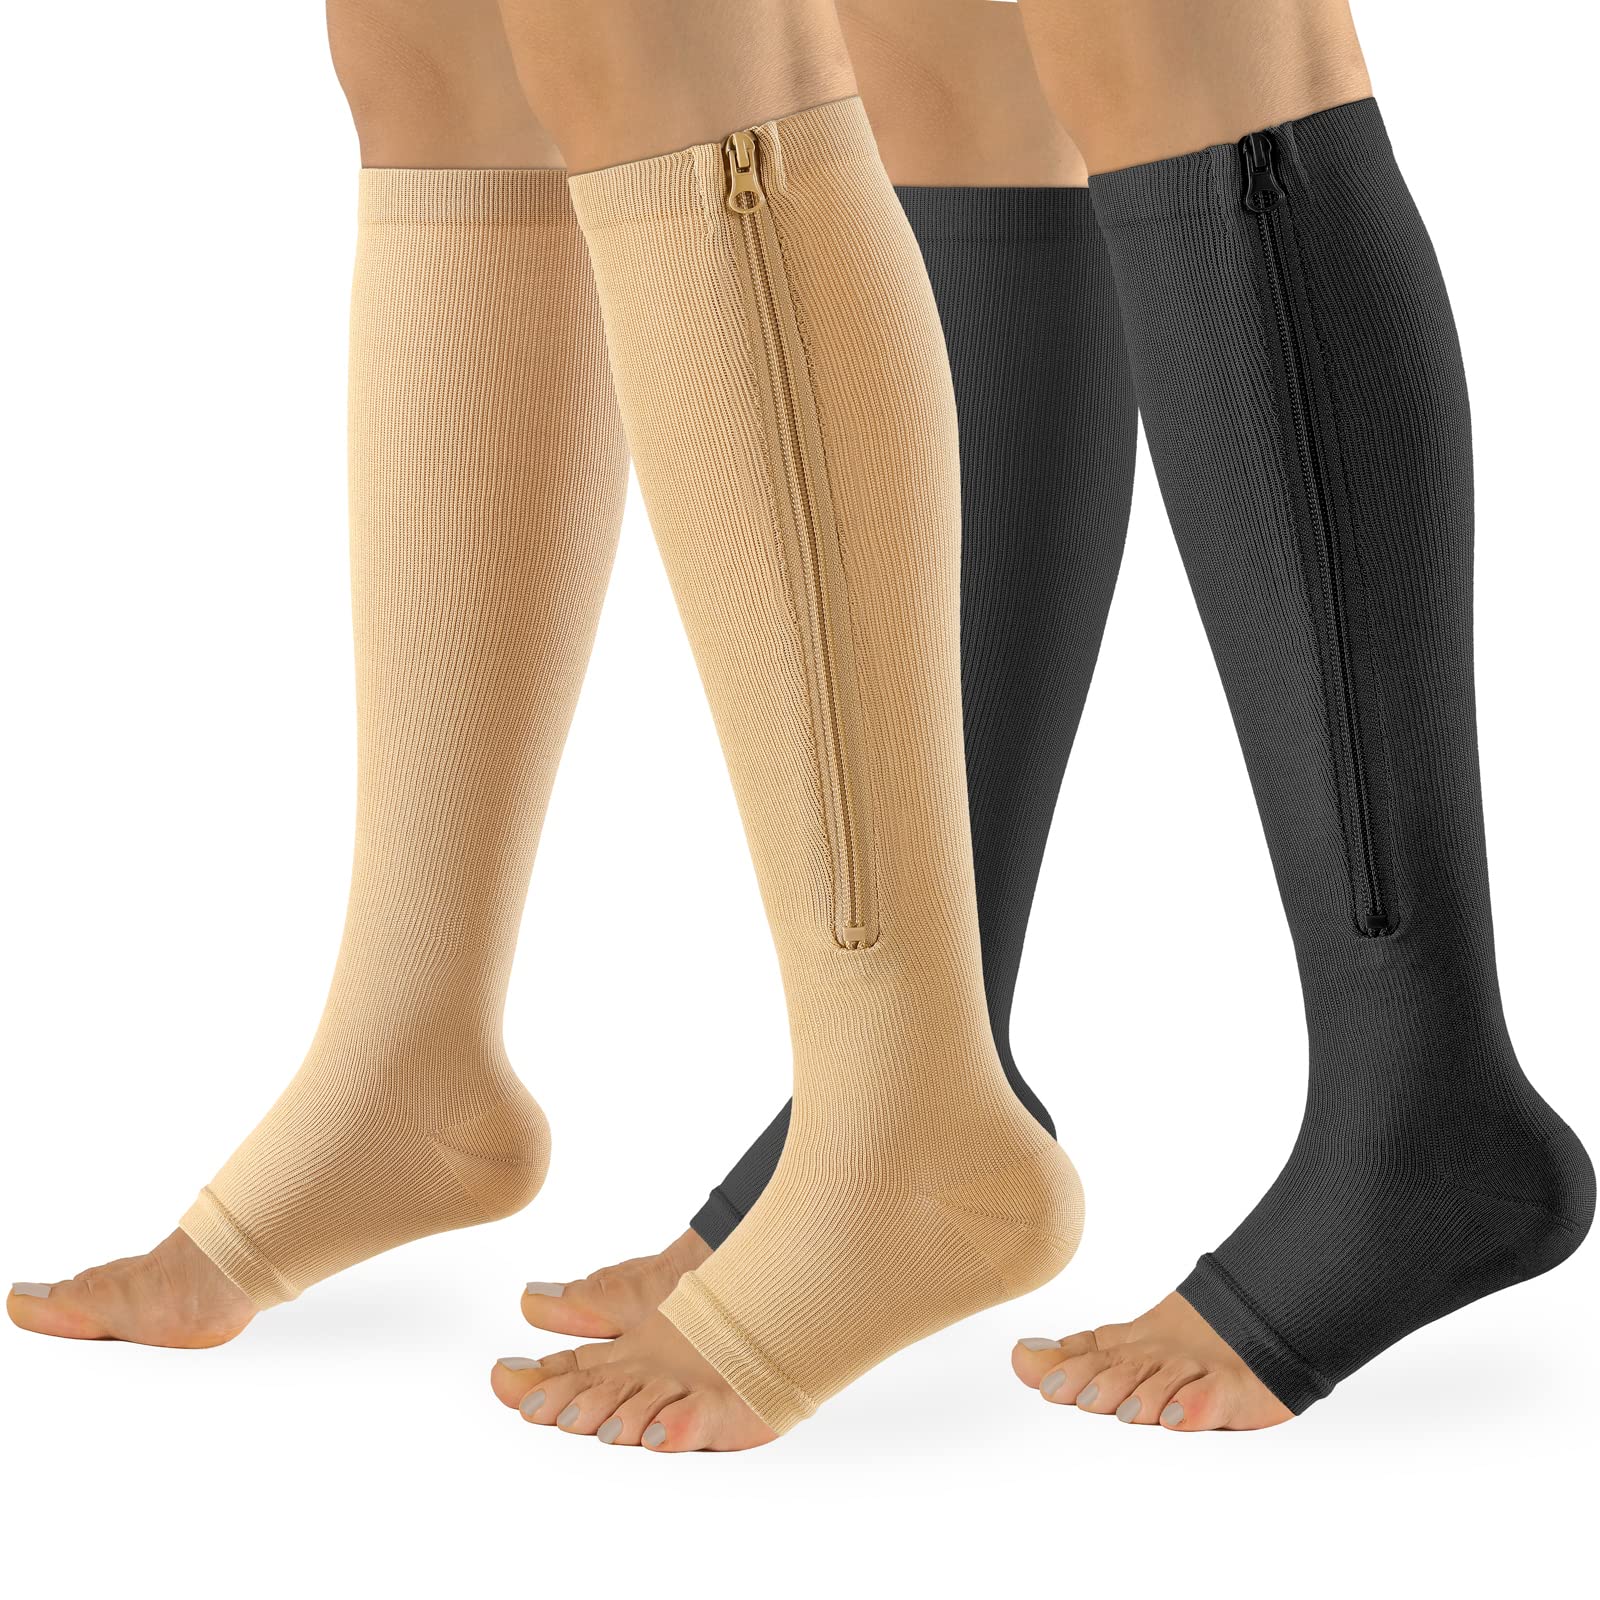 Zipper Compression Socks Women & Men Calf Knee High 15-20mmHg Open